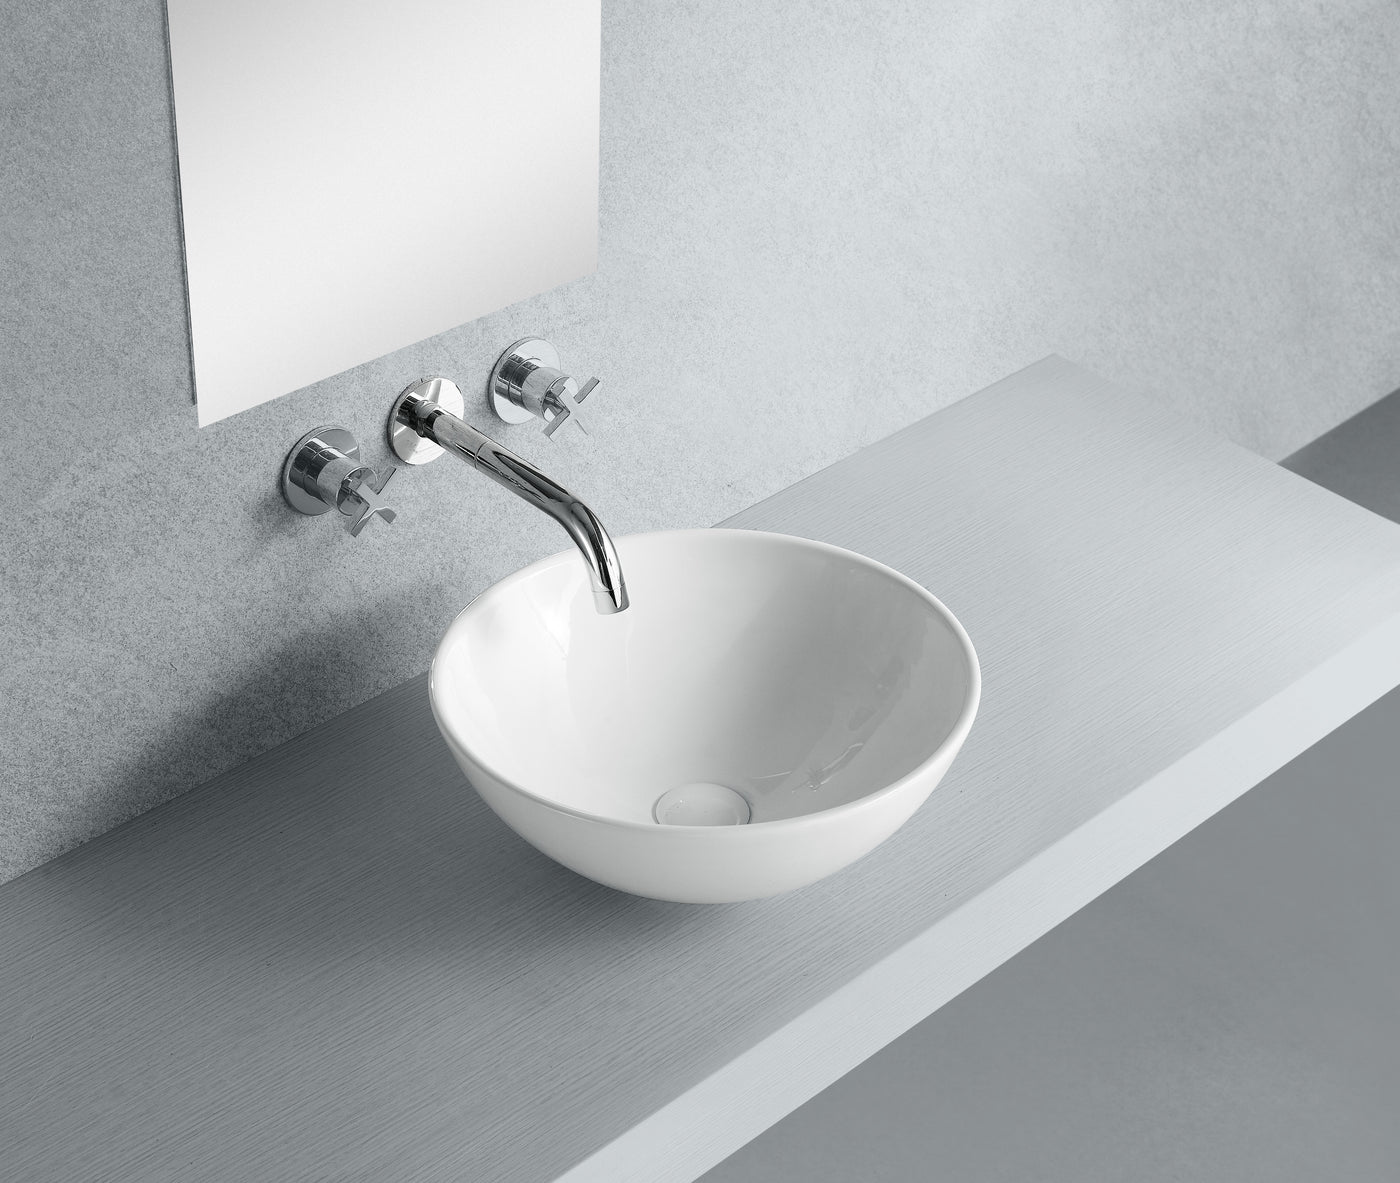 Elements of Design EDV4030 Vessel Sink, White